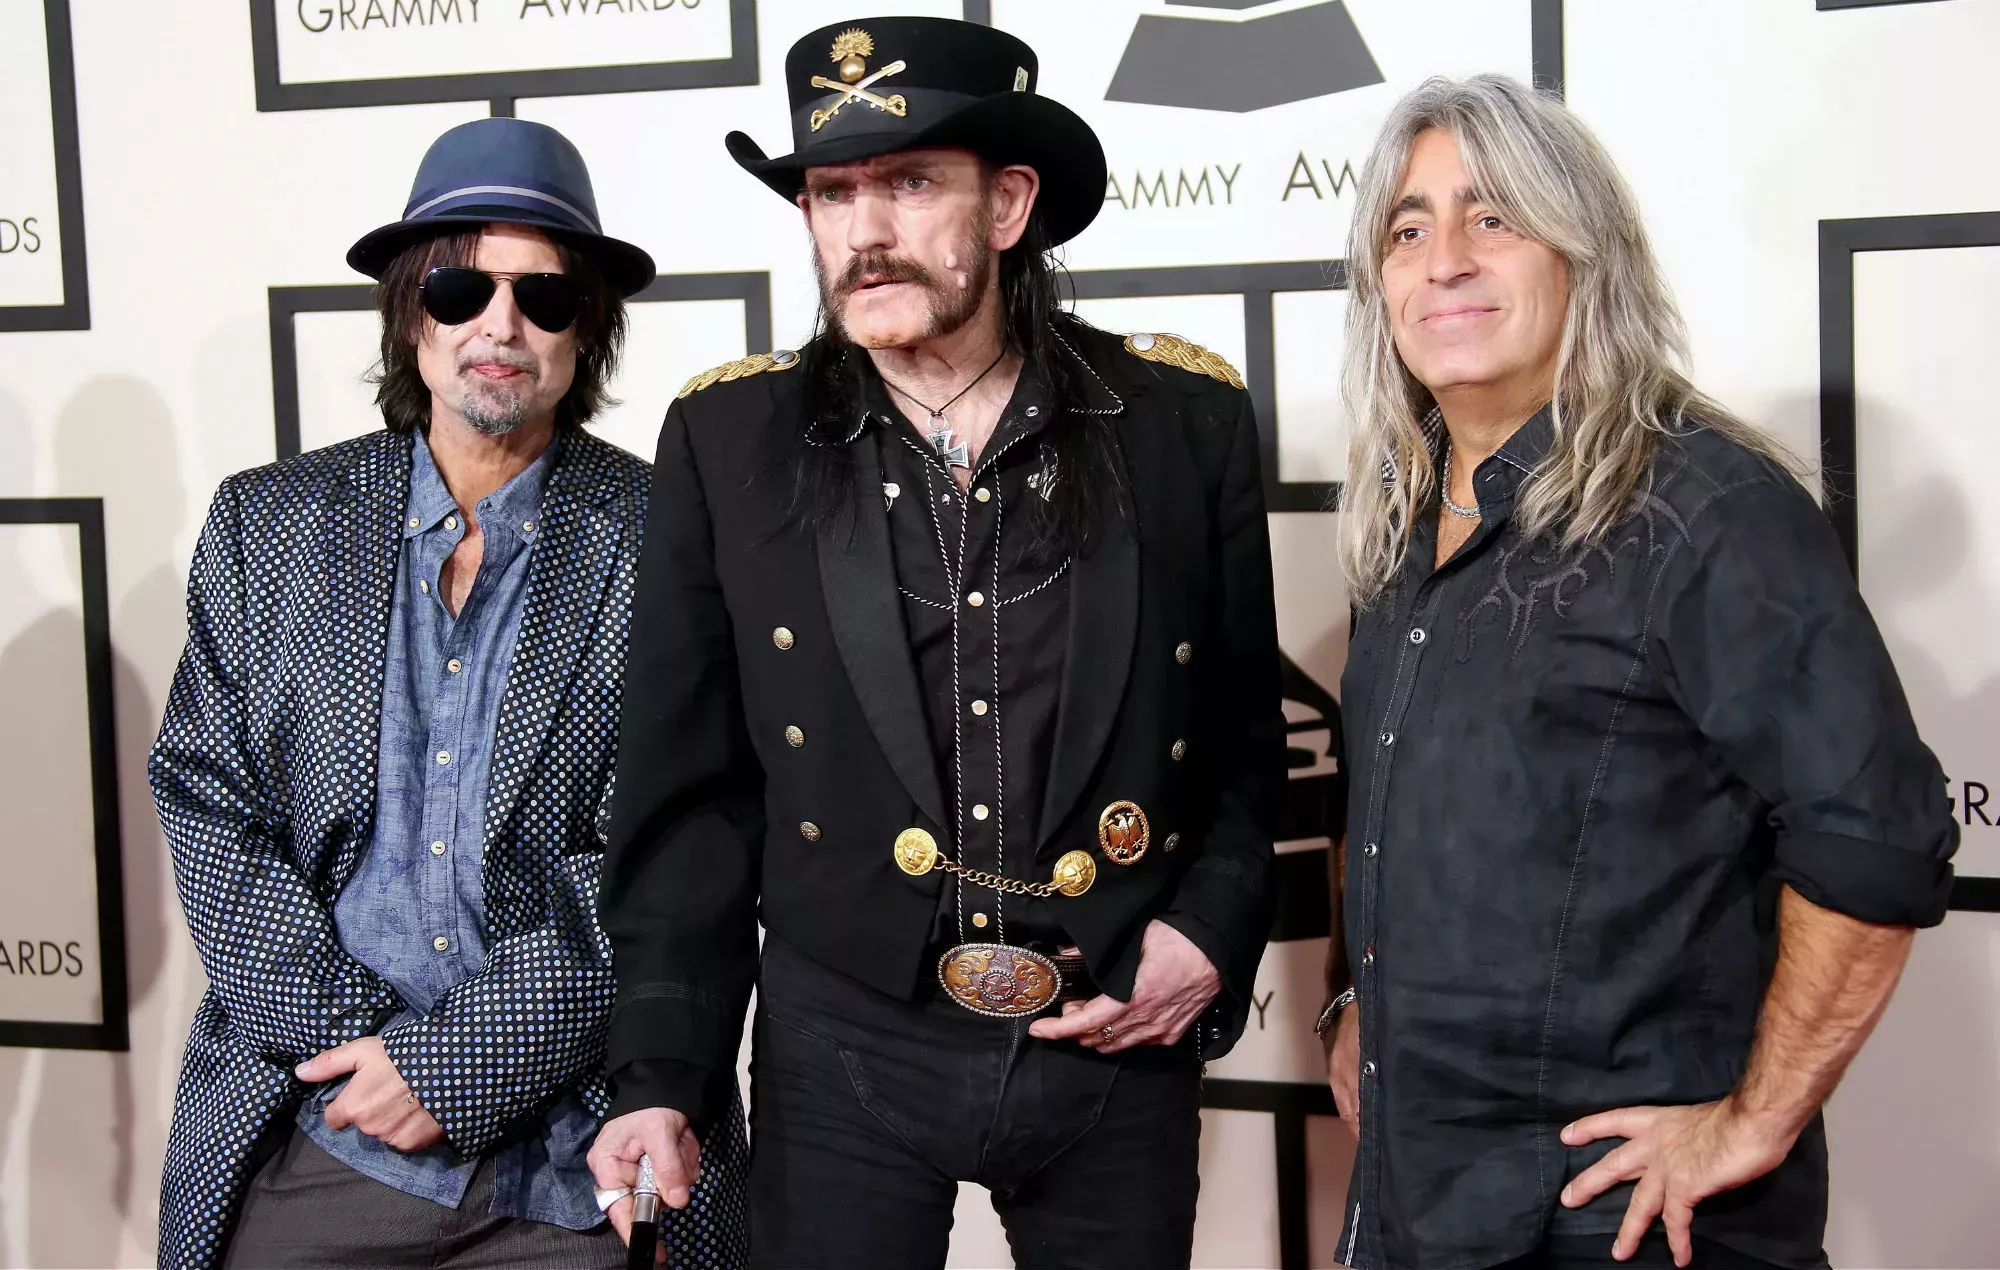 Vea cómo los miembros supervivientes de Motörhead consagran las cenizas de Lemmy